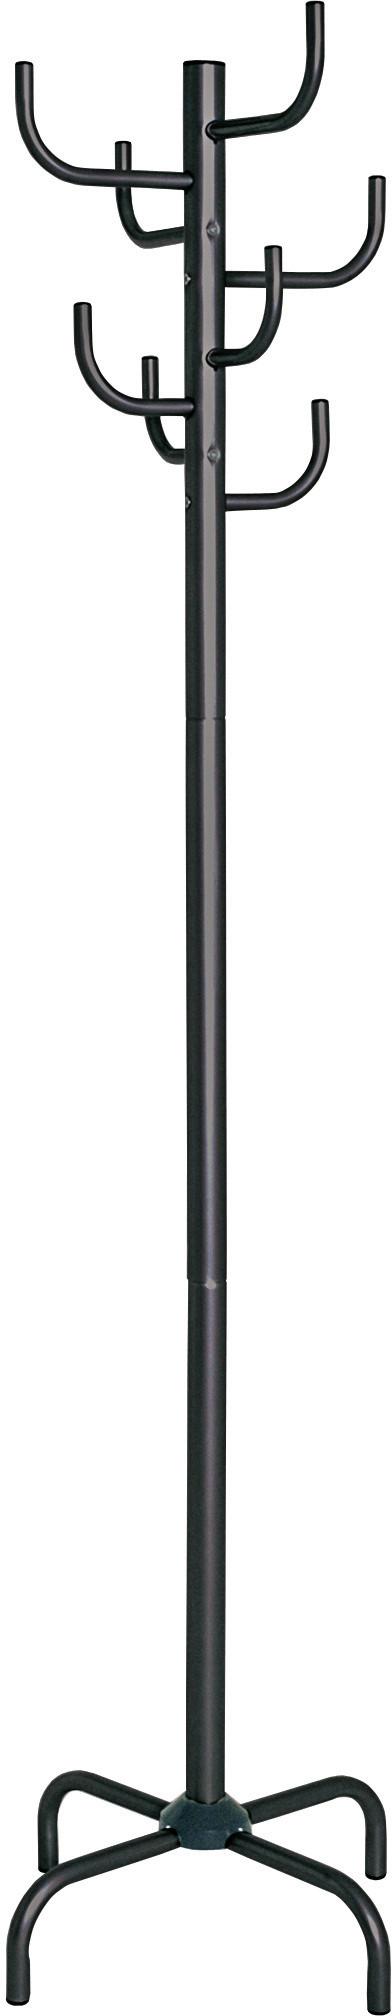 Vješalica Samostojeća Cactus - crna, Modern, metal (47/180/47cm) - Based